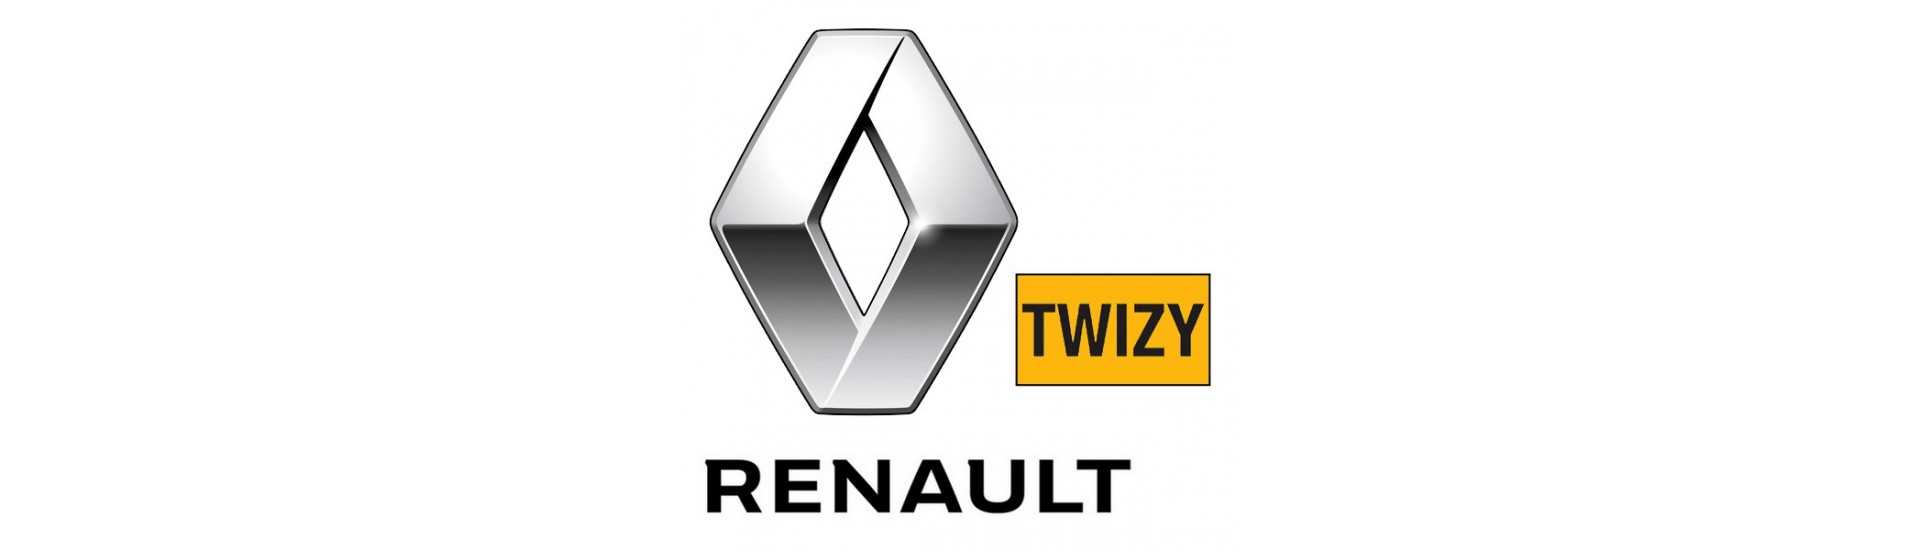 Bodywork al miglior prezzo per auto senza permesso Renault Twizy